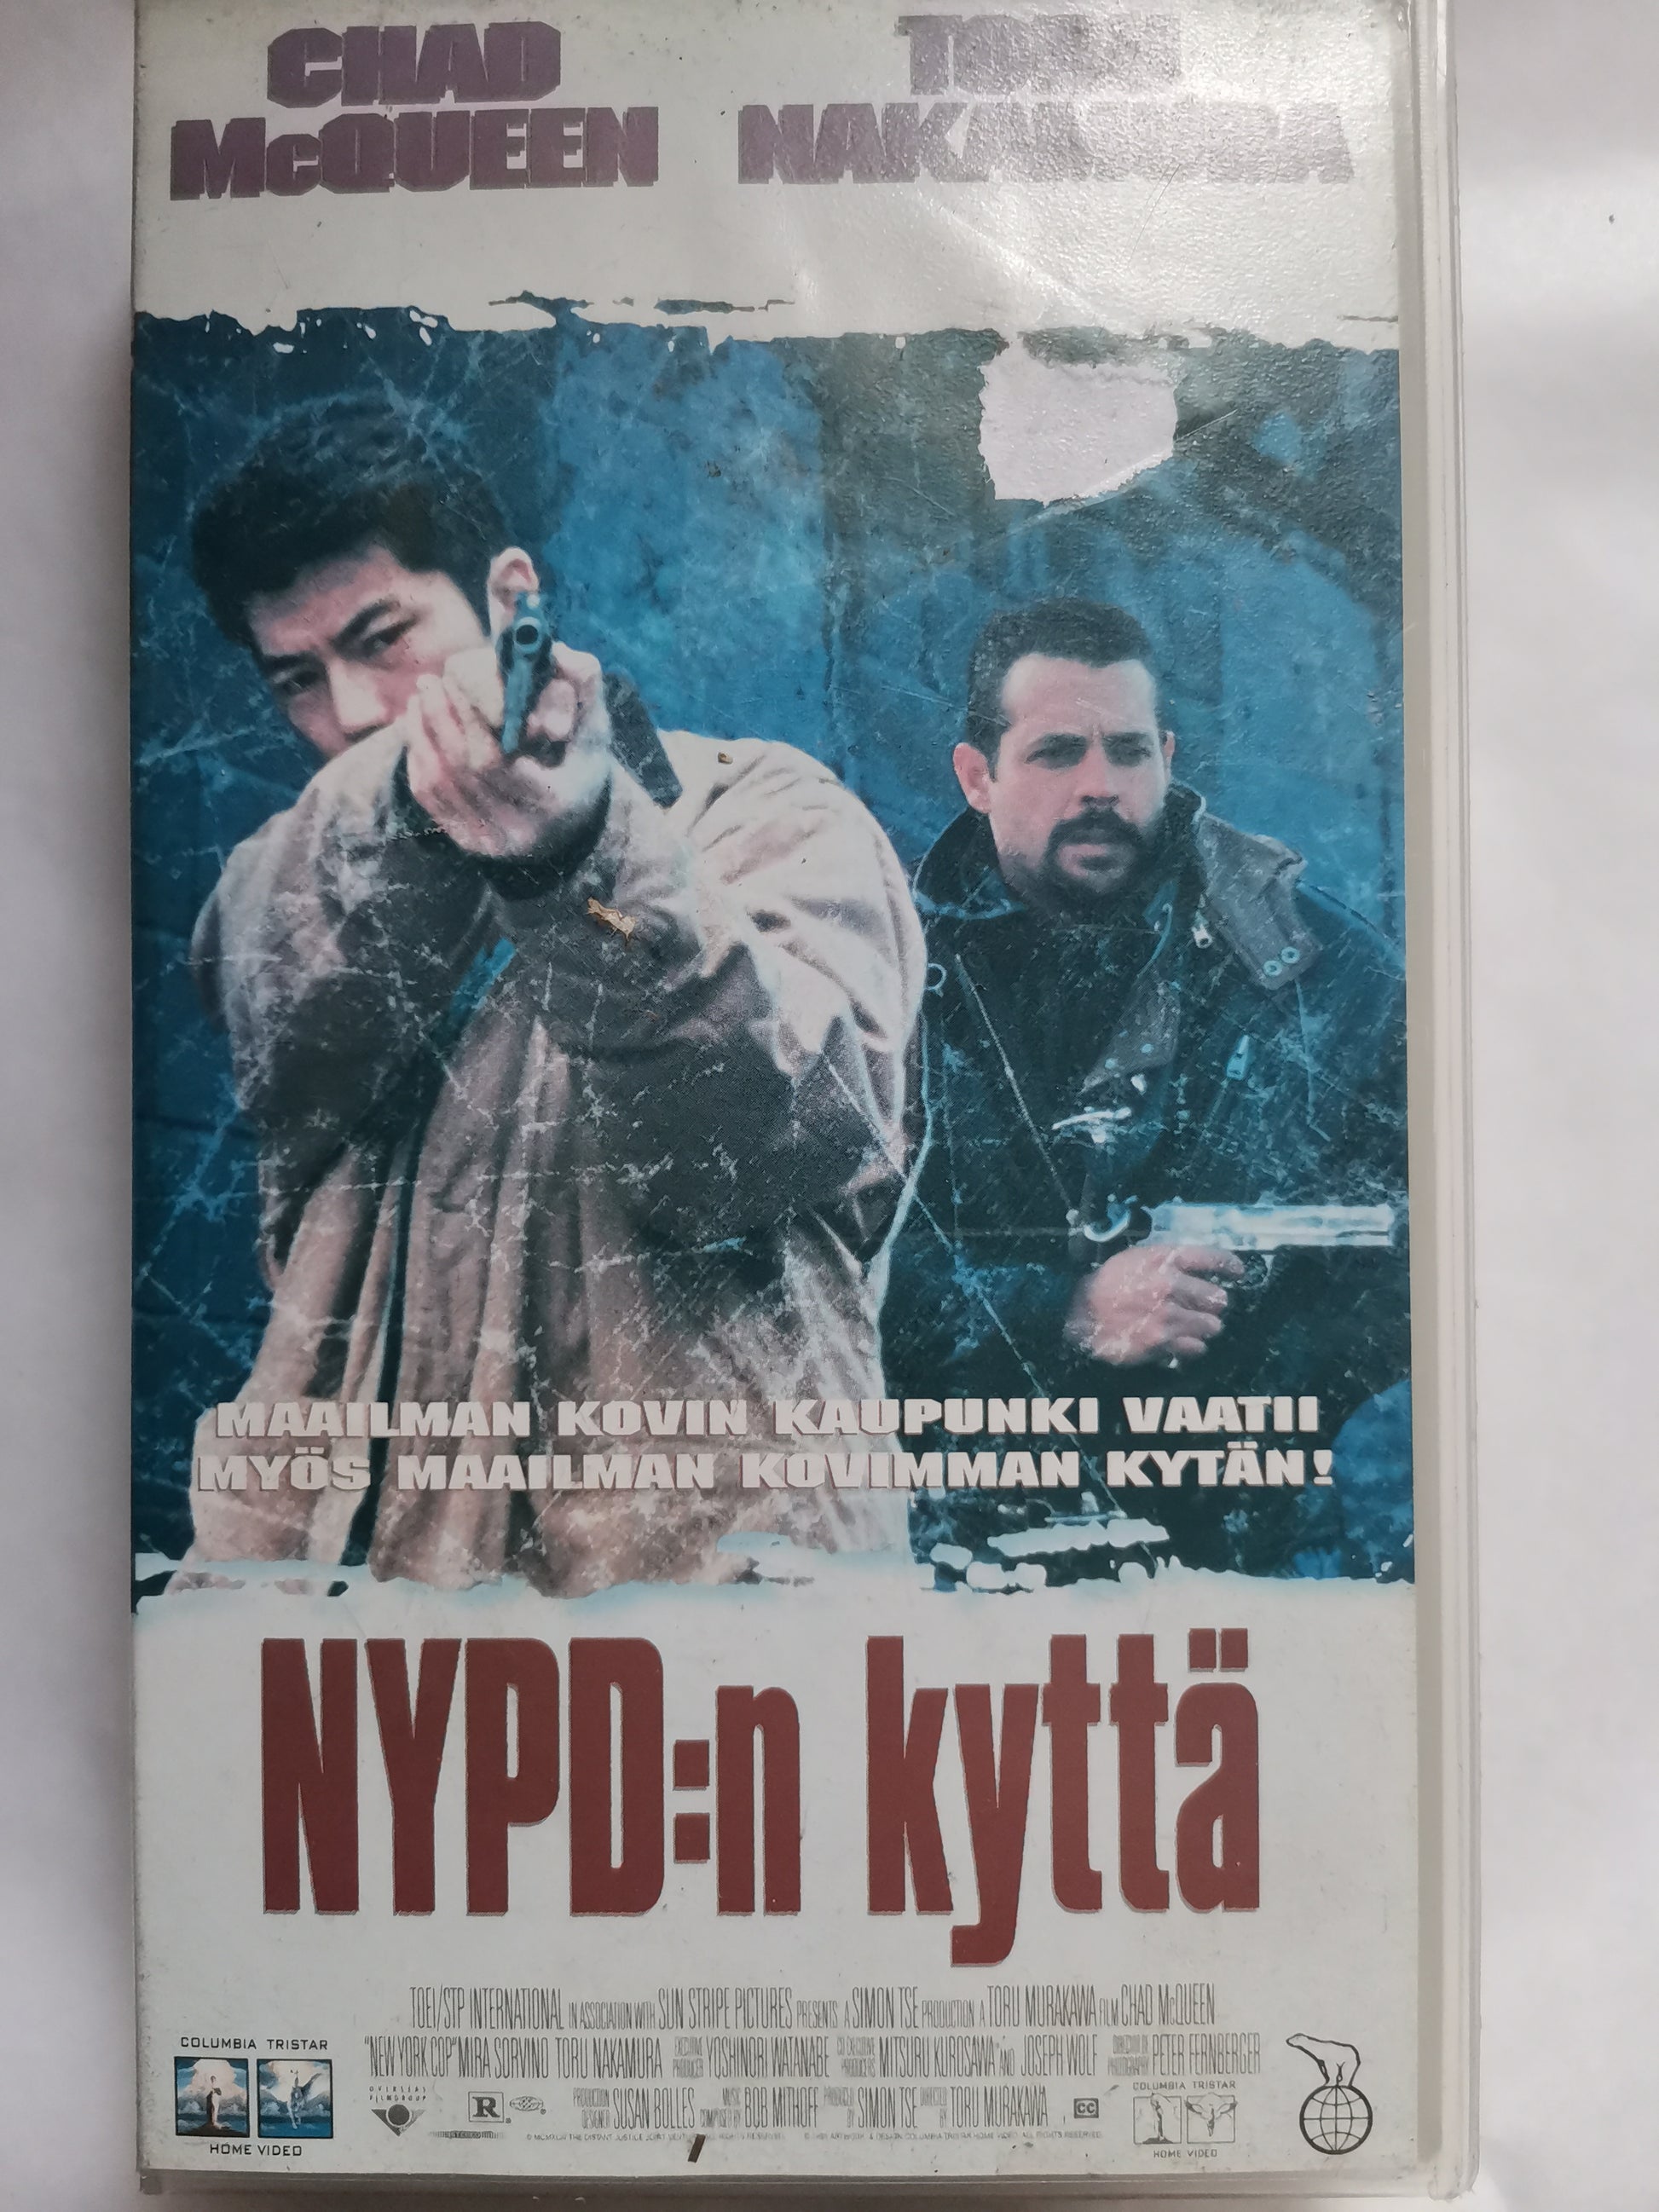 NYPD:n kyttä VHS-elokuva (käytetty) - KorhoneCom